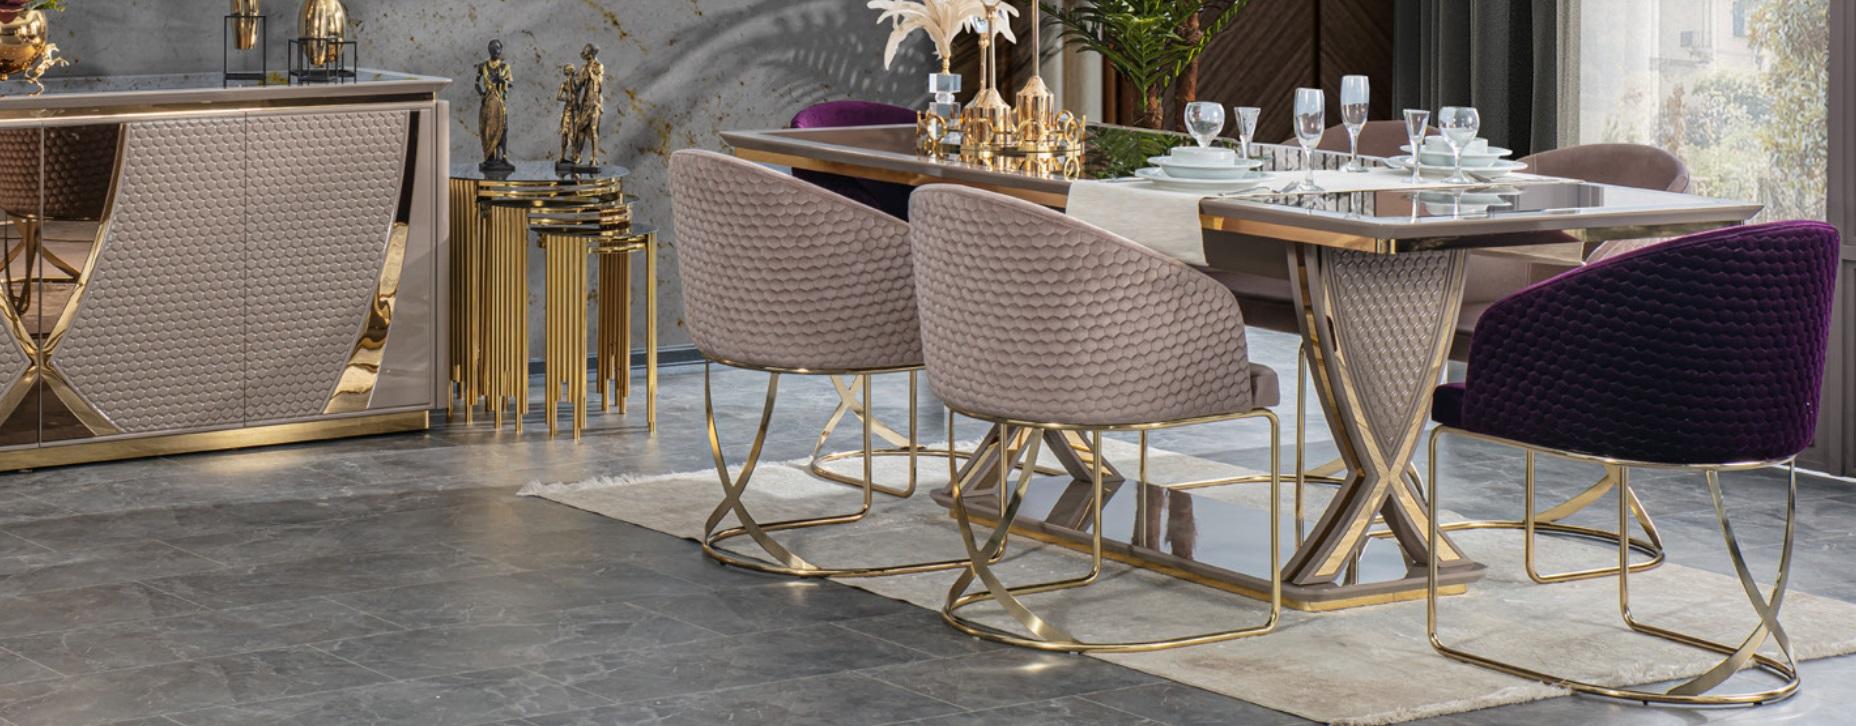 Tisch italienischer Stil Esszimmer Königlicher Esstisch Klassischer Tische Neu